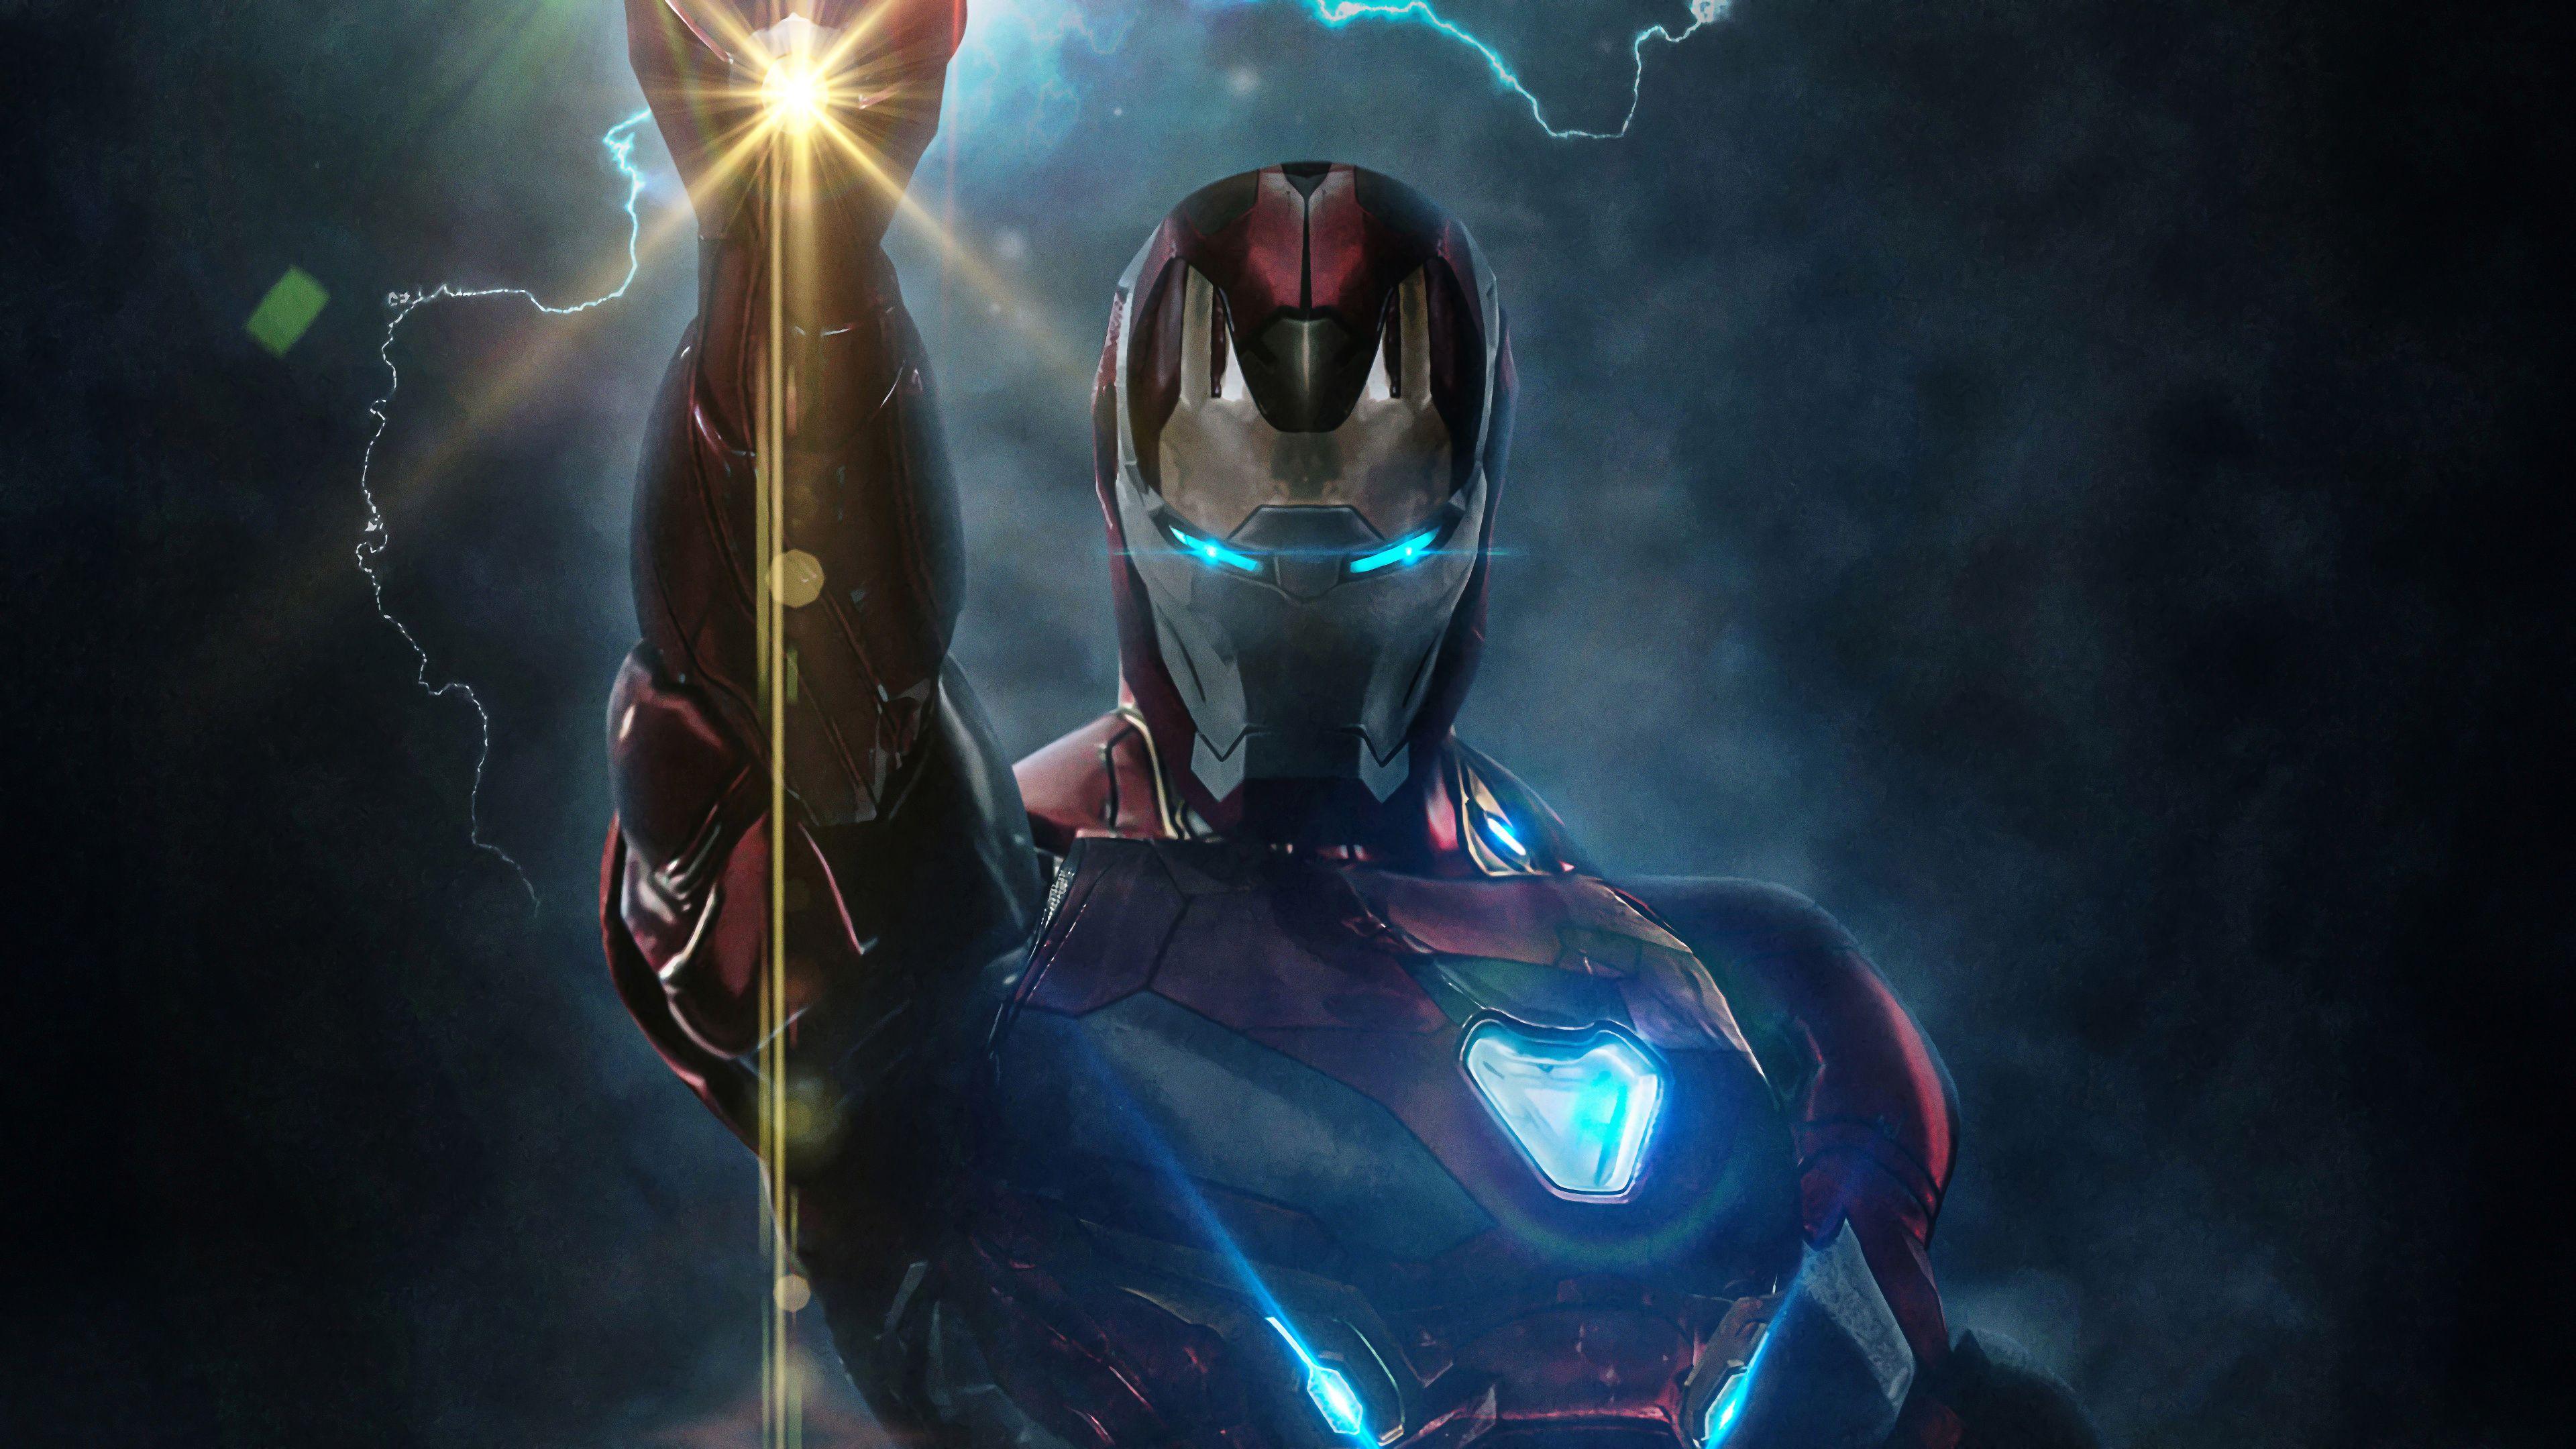 Iron Man Endgame 4K Wallpapers - Top Free Iron Man Endgame 4K ...